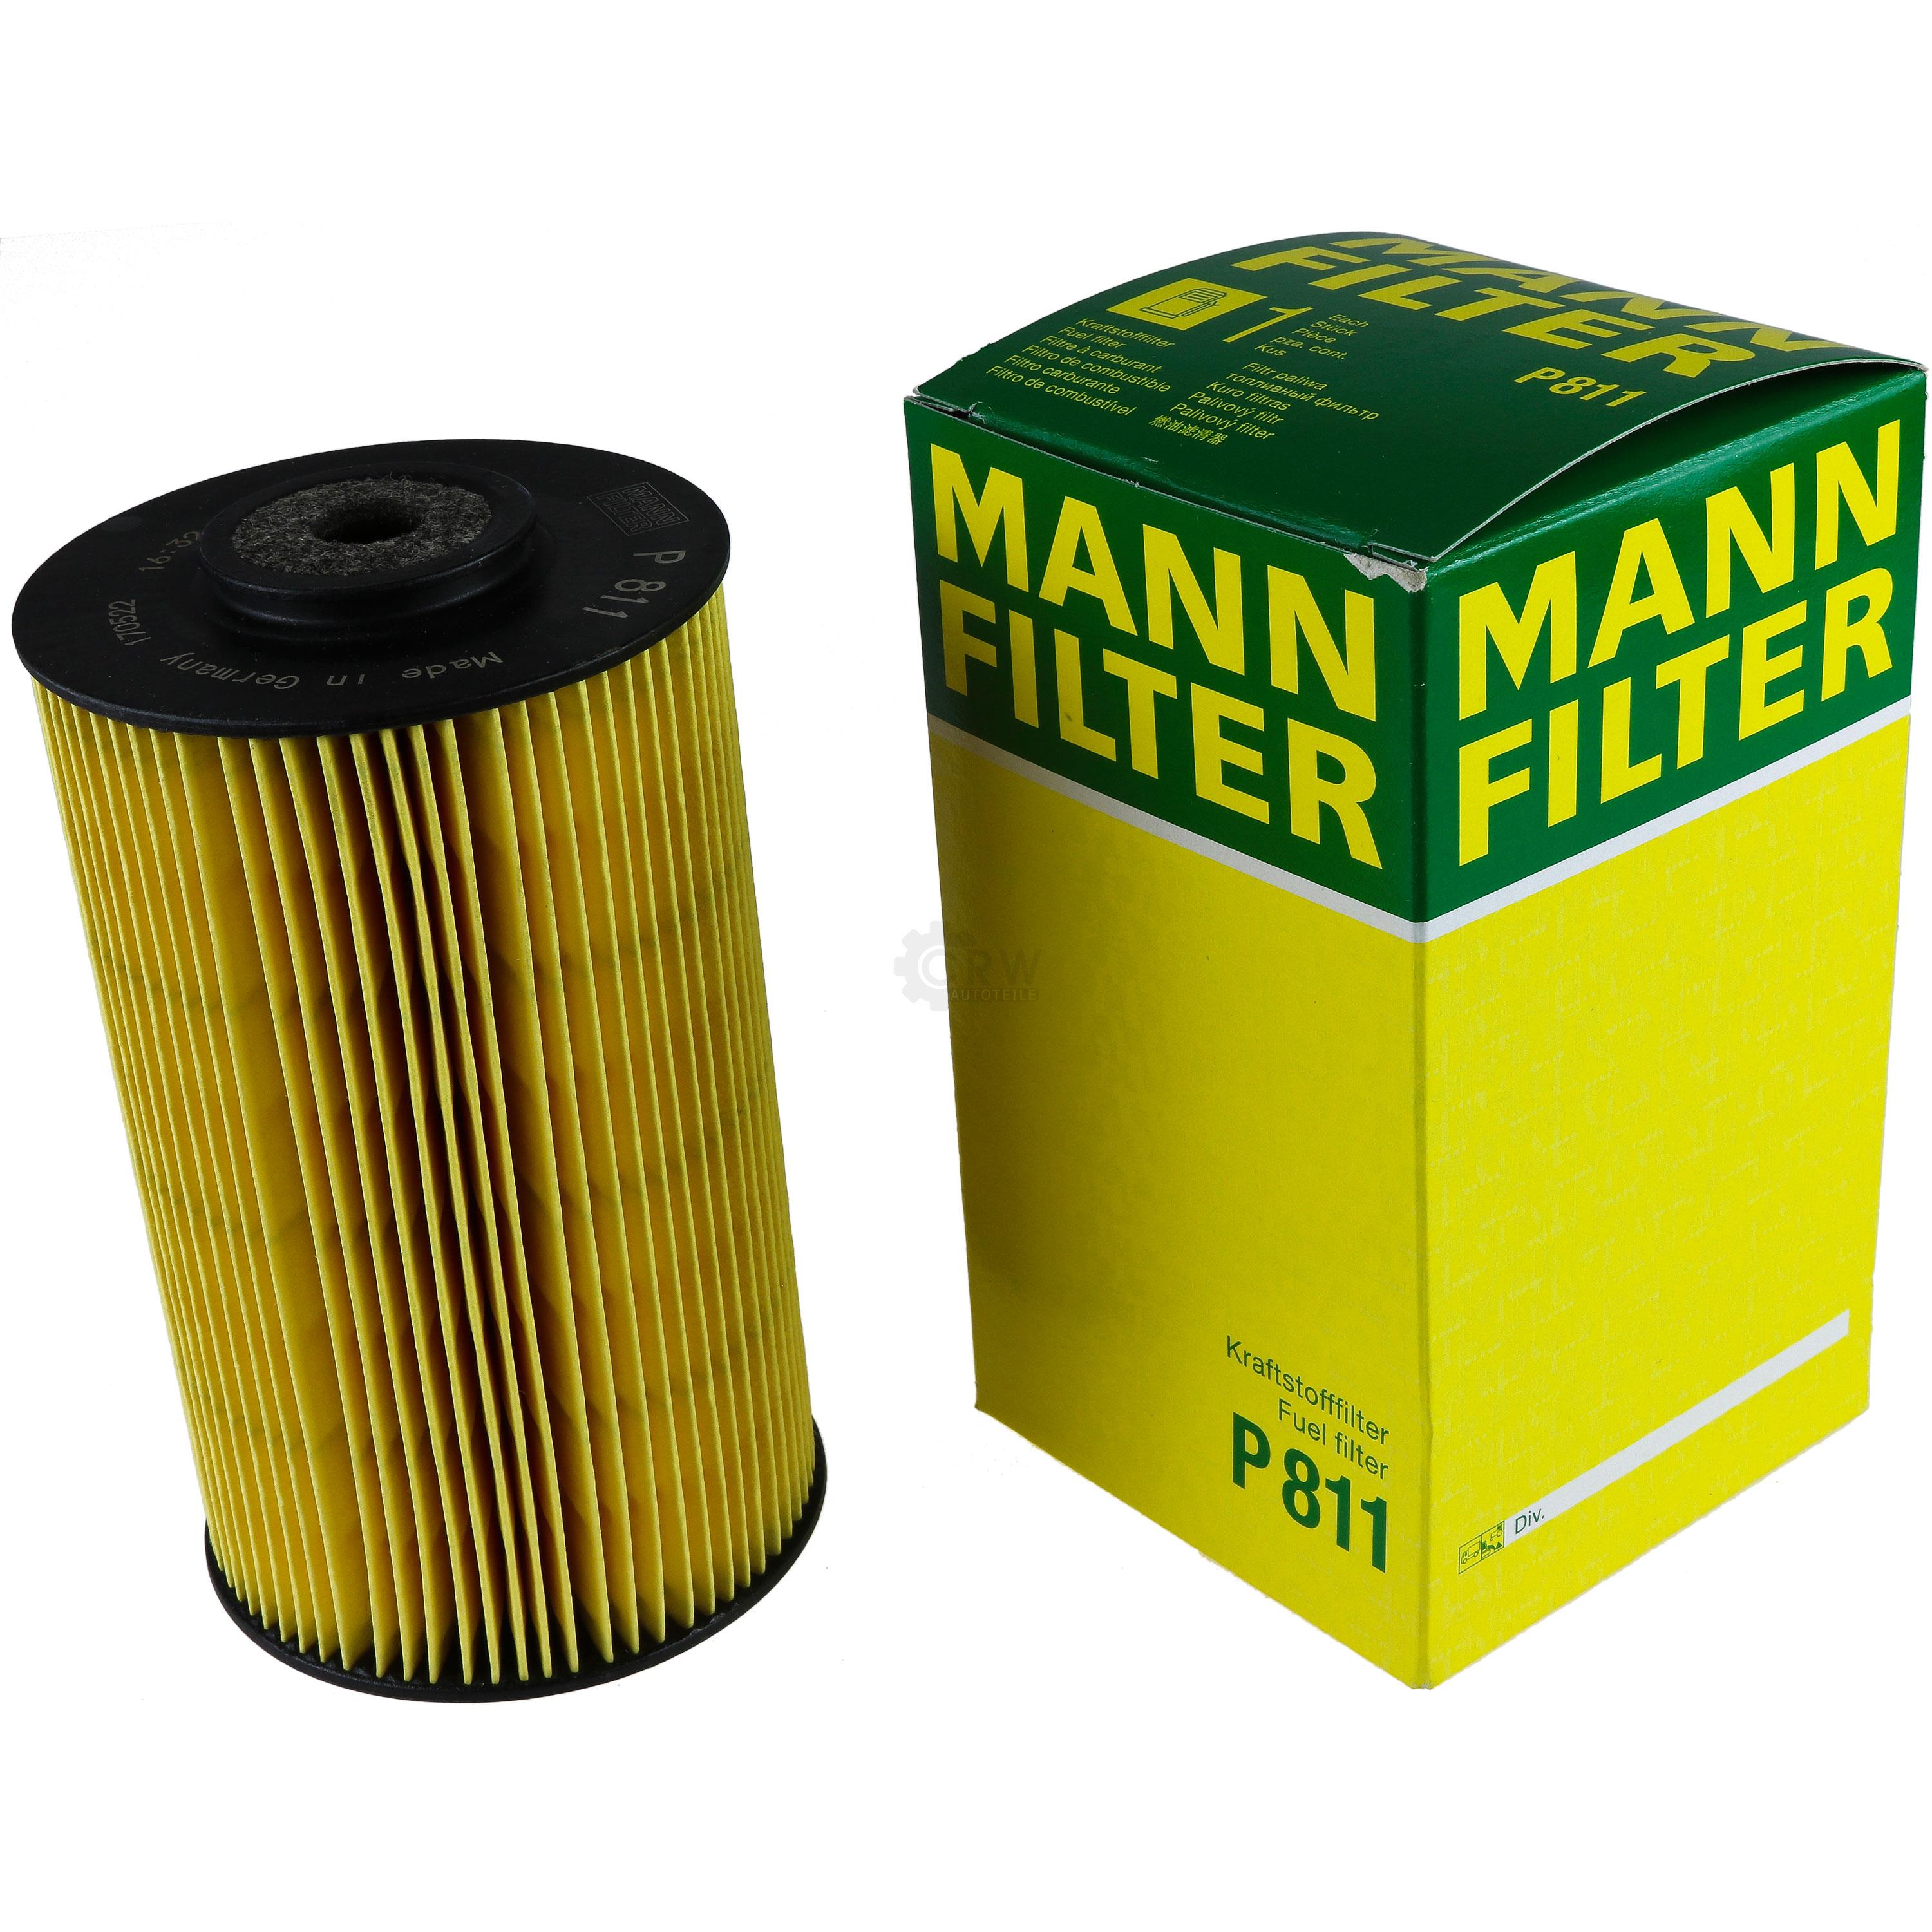 MANN-FILTER Kraftstofffilter P 811 Fuel Filter